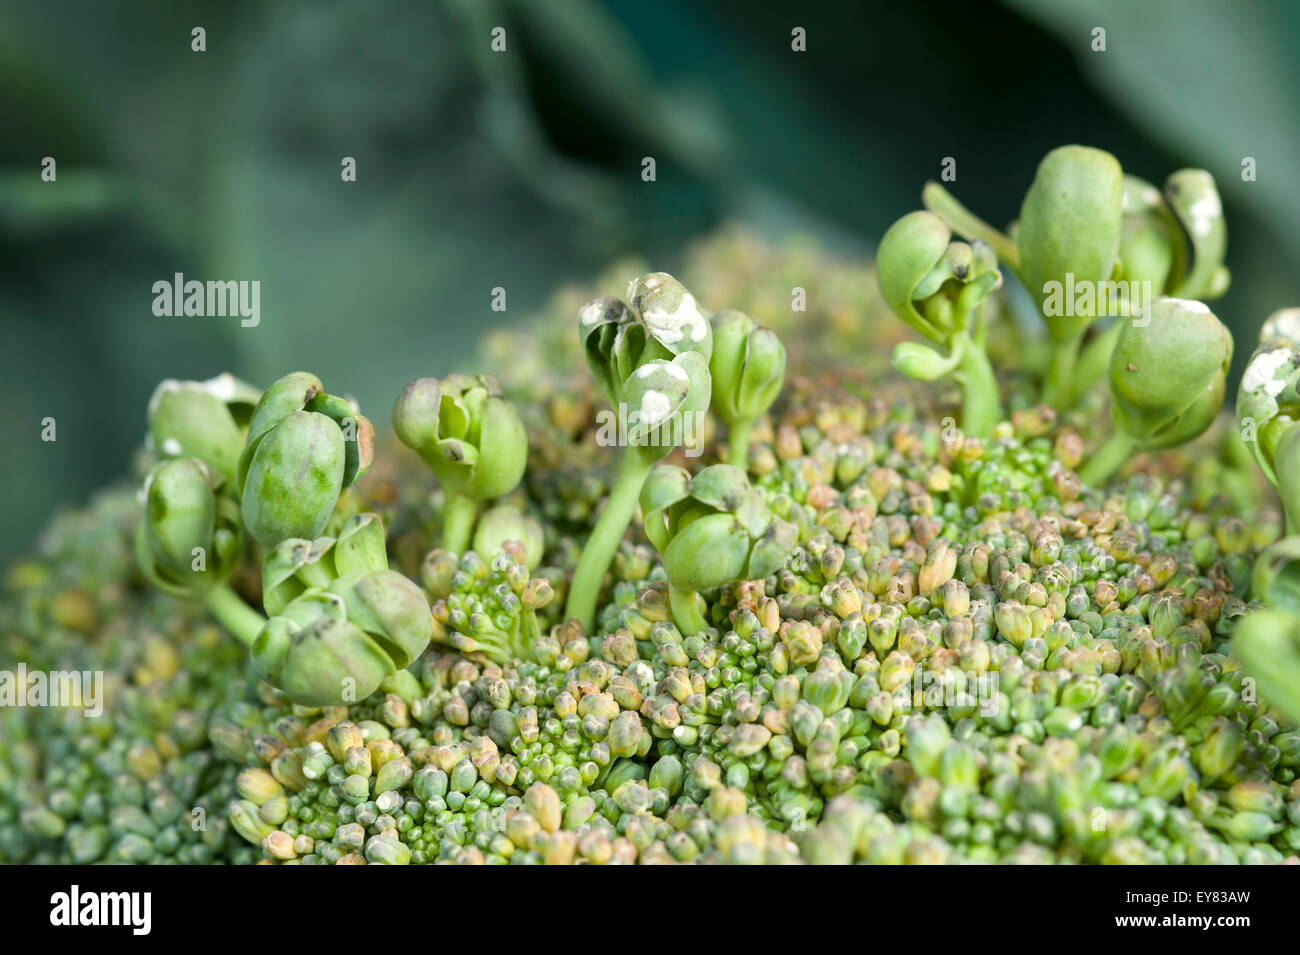 Tag 'testa' sintomi di ruggine bianca sulla malattia di broccoli Foto Stock